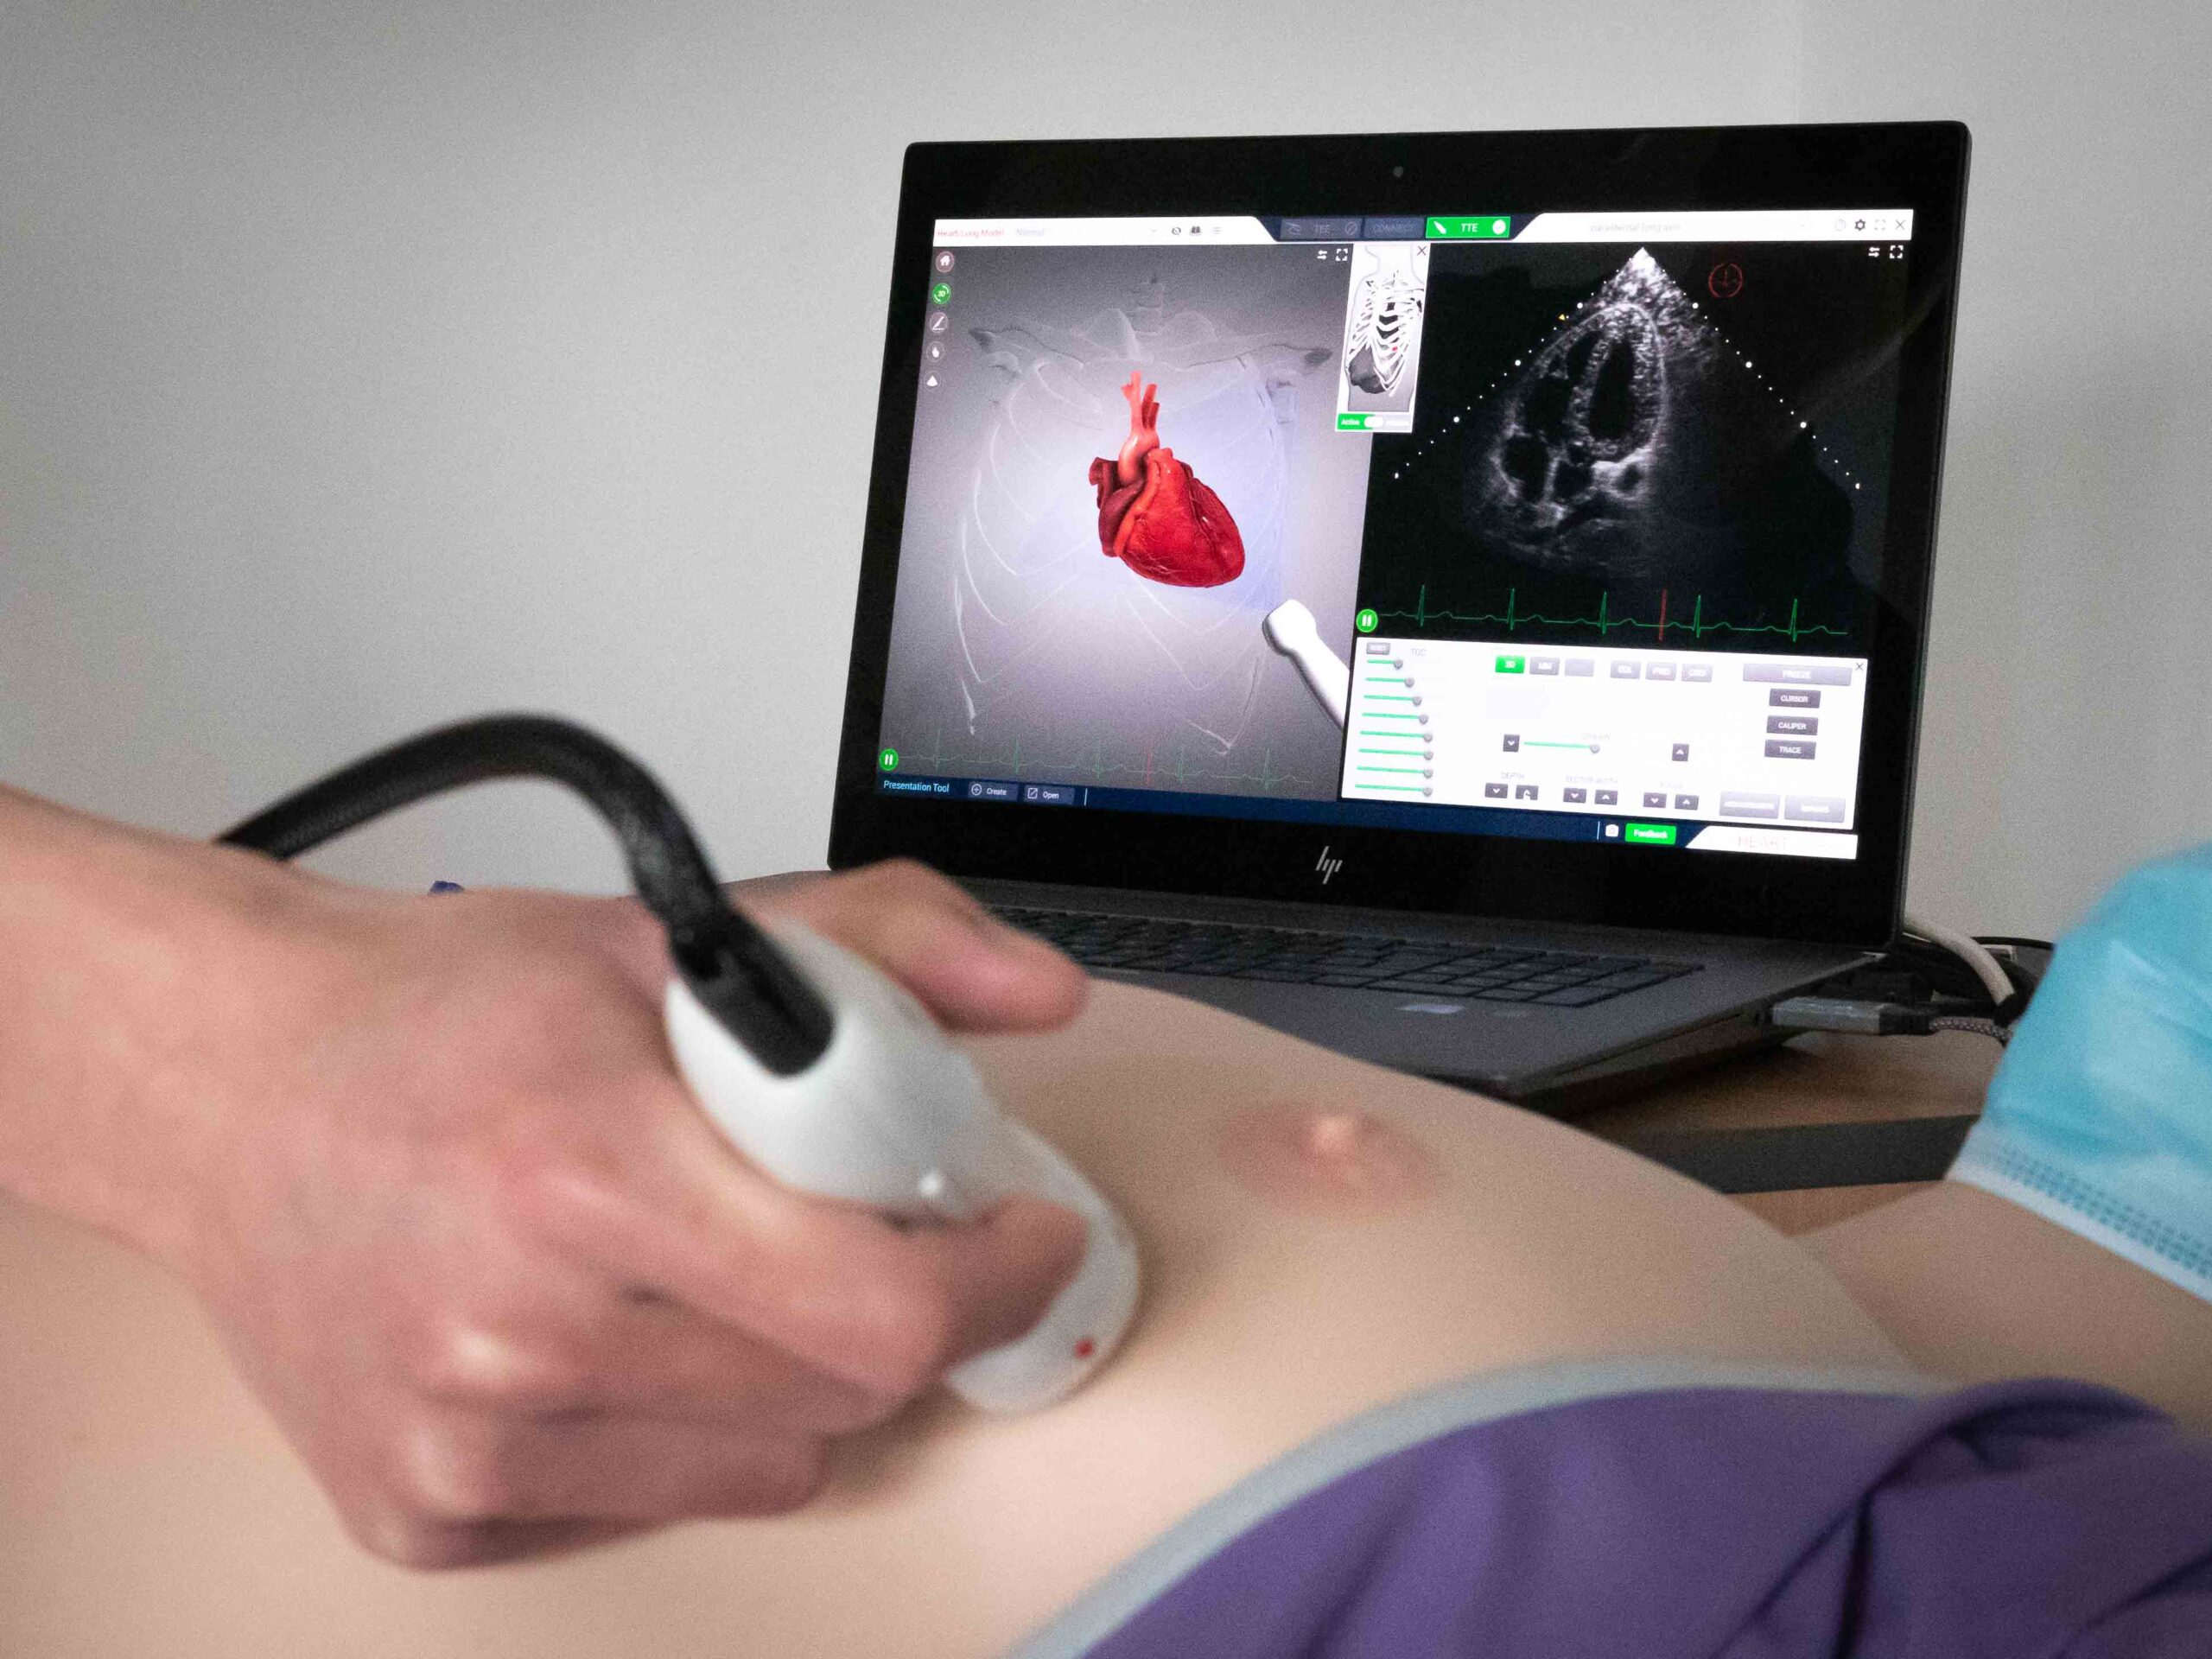 echo-ultrasound-scanning